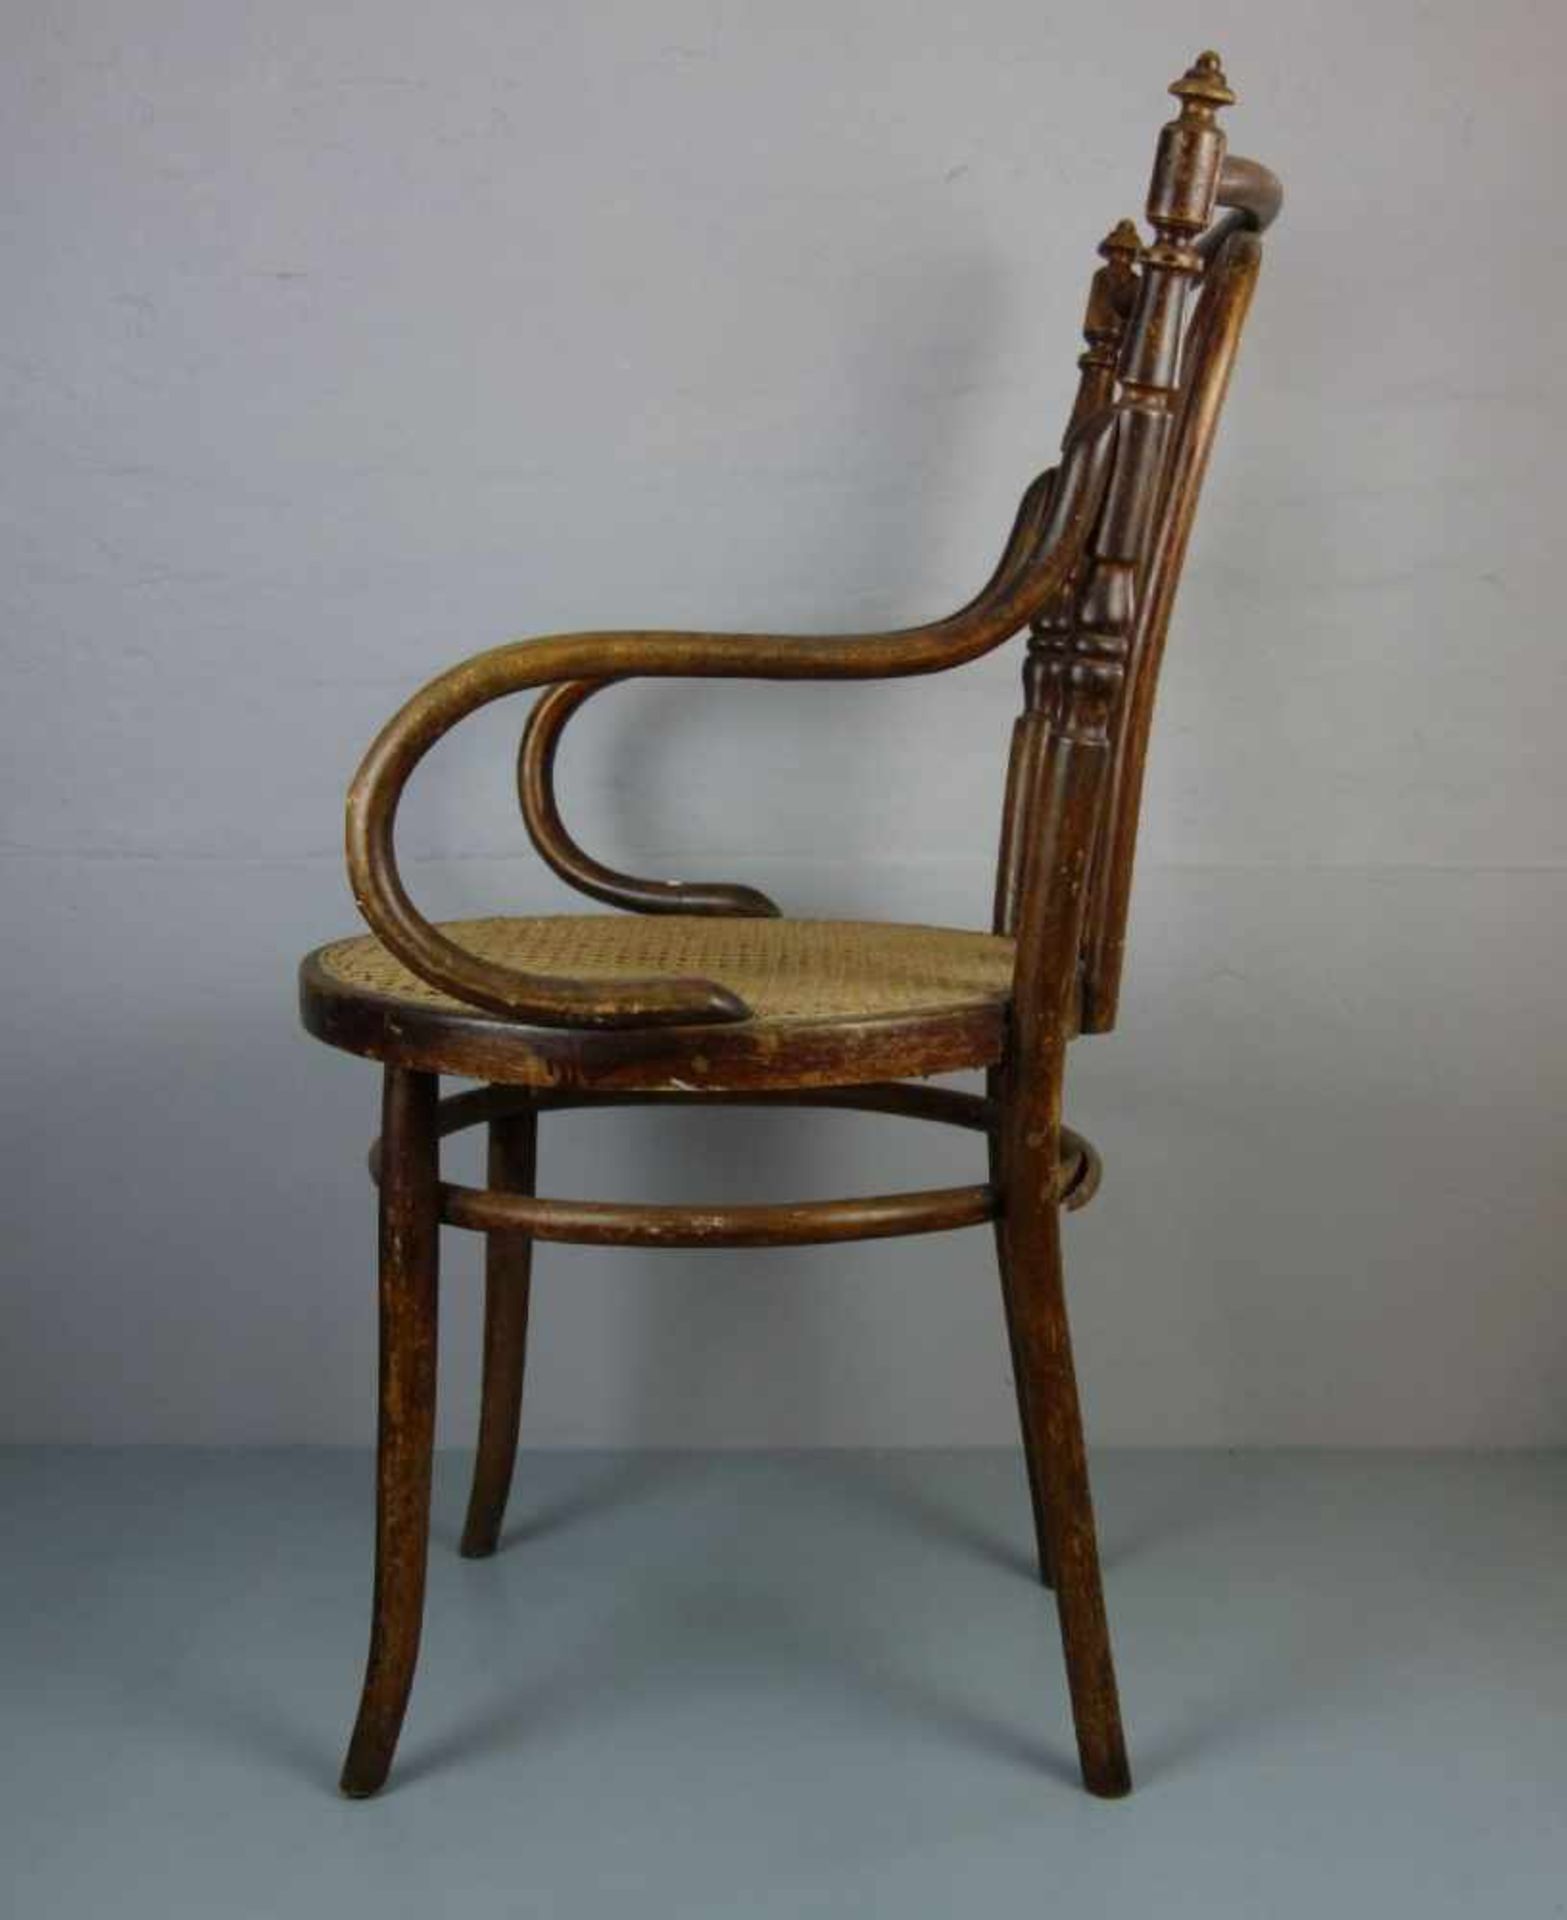 BUGHOLZSTUHL in der Art des Thonet-Stuhls Modell-Nr. 3065. Runde Sitzfläche mit Geflecht auf - Image 2 of 3